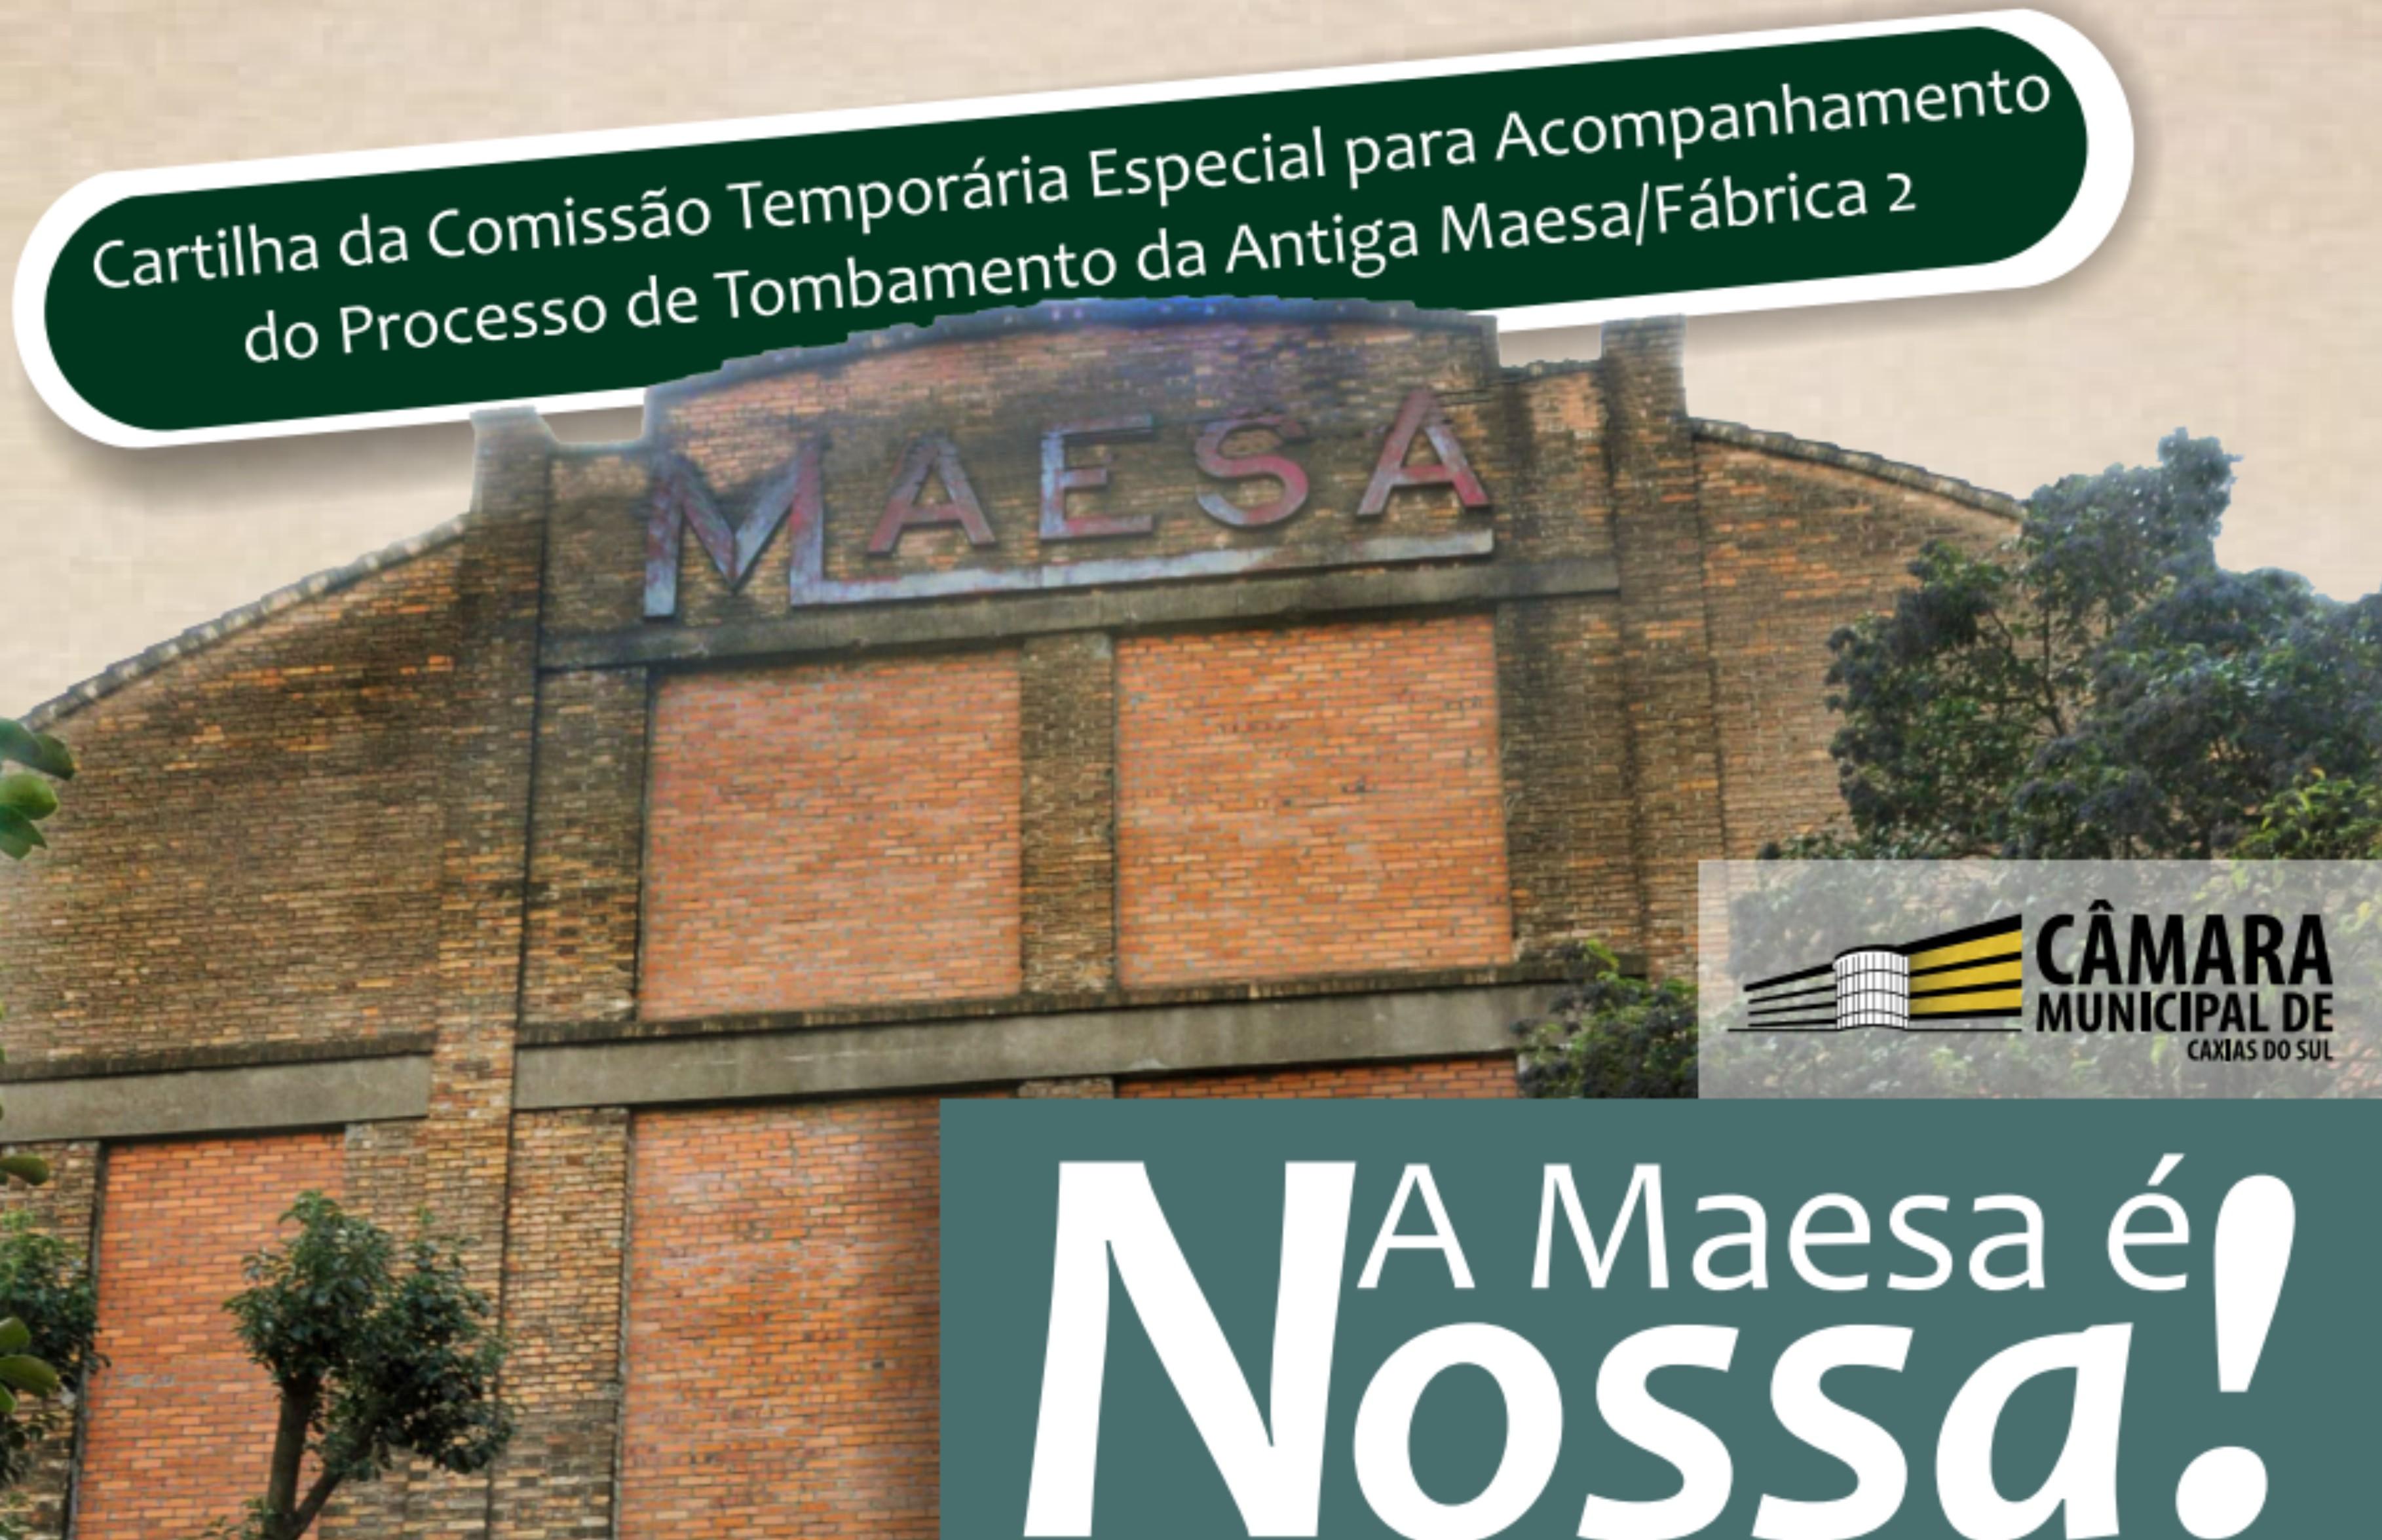 Cartilha “A Maesa é nossa!” será lançada nesta sexta-feira nos pavilhões da 31ª Festa Nacional da Uva